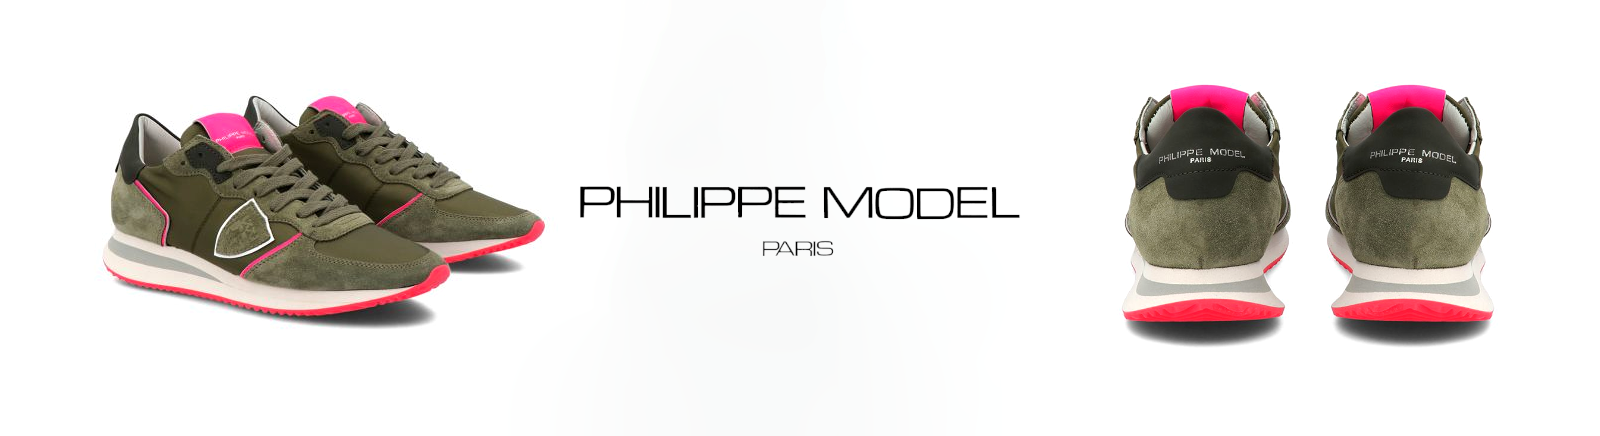 Juppen: PHILIPPE MODEL Coole und moderne Sneaker für Damen online shoppen